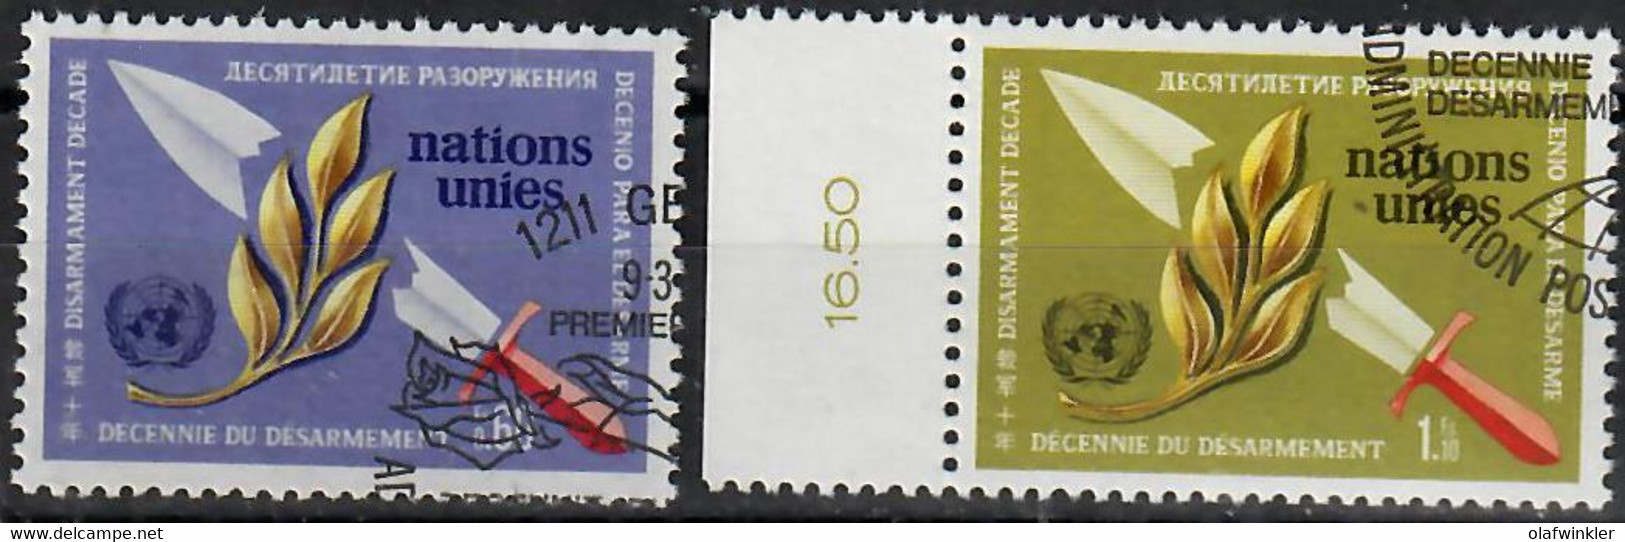 1973 Décennie Du Désarmement Zum 30-31 / Mi 30-31 / Sc 30-31 / YT 30-31 Oblitéré / Gestempelt /used [zro] - Used Stamps